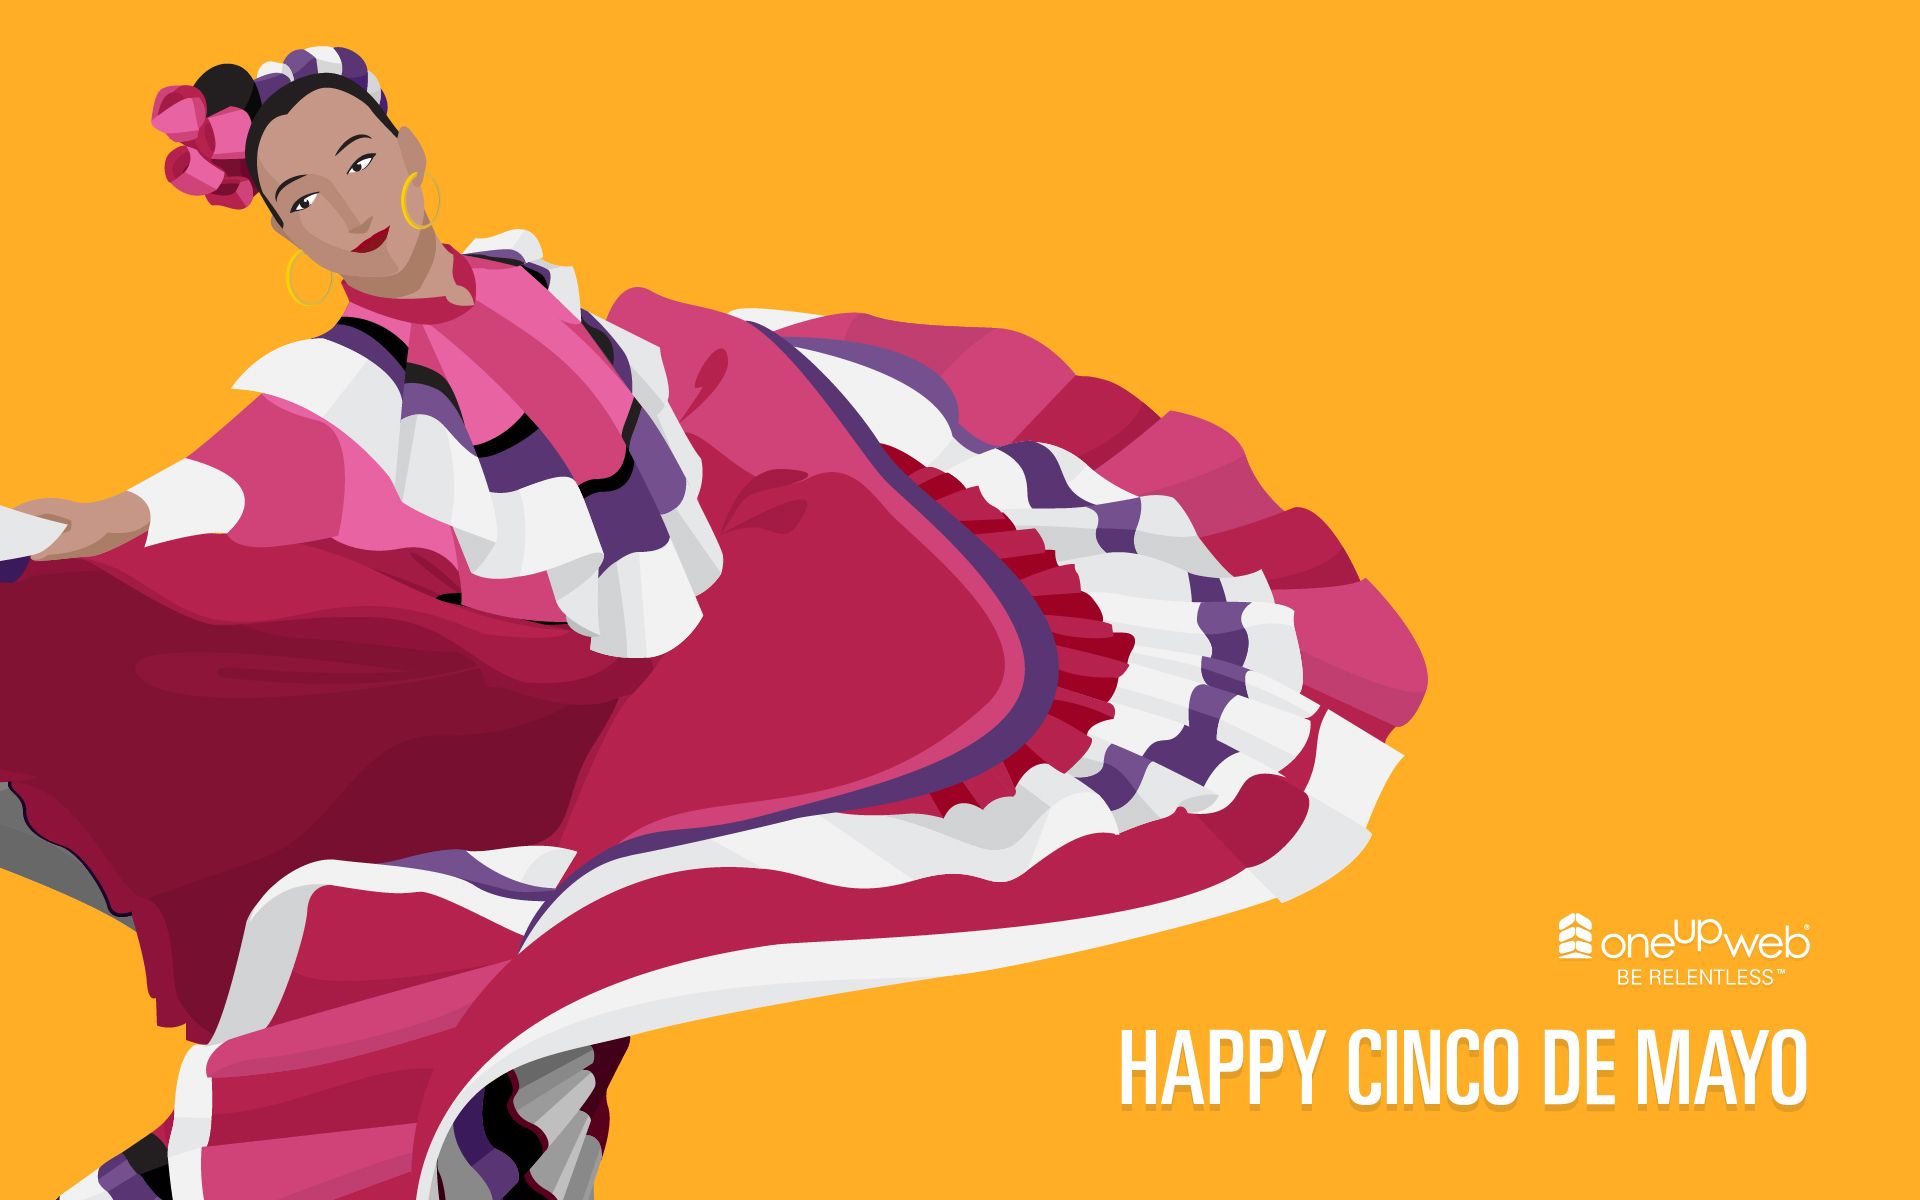 Happy Cinco de Mayo! #wallpaper #desktop #Cincodemayo. Poster